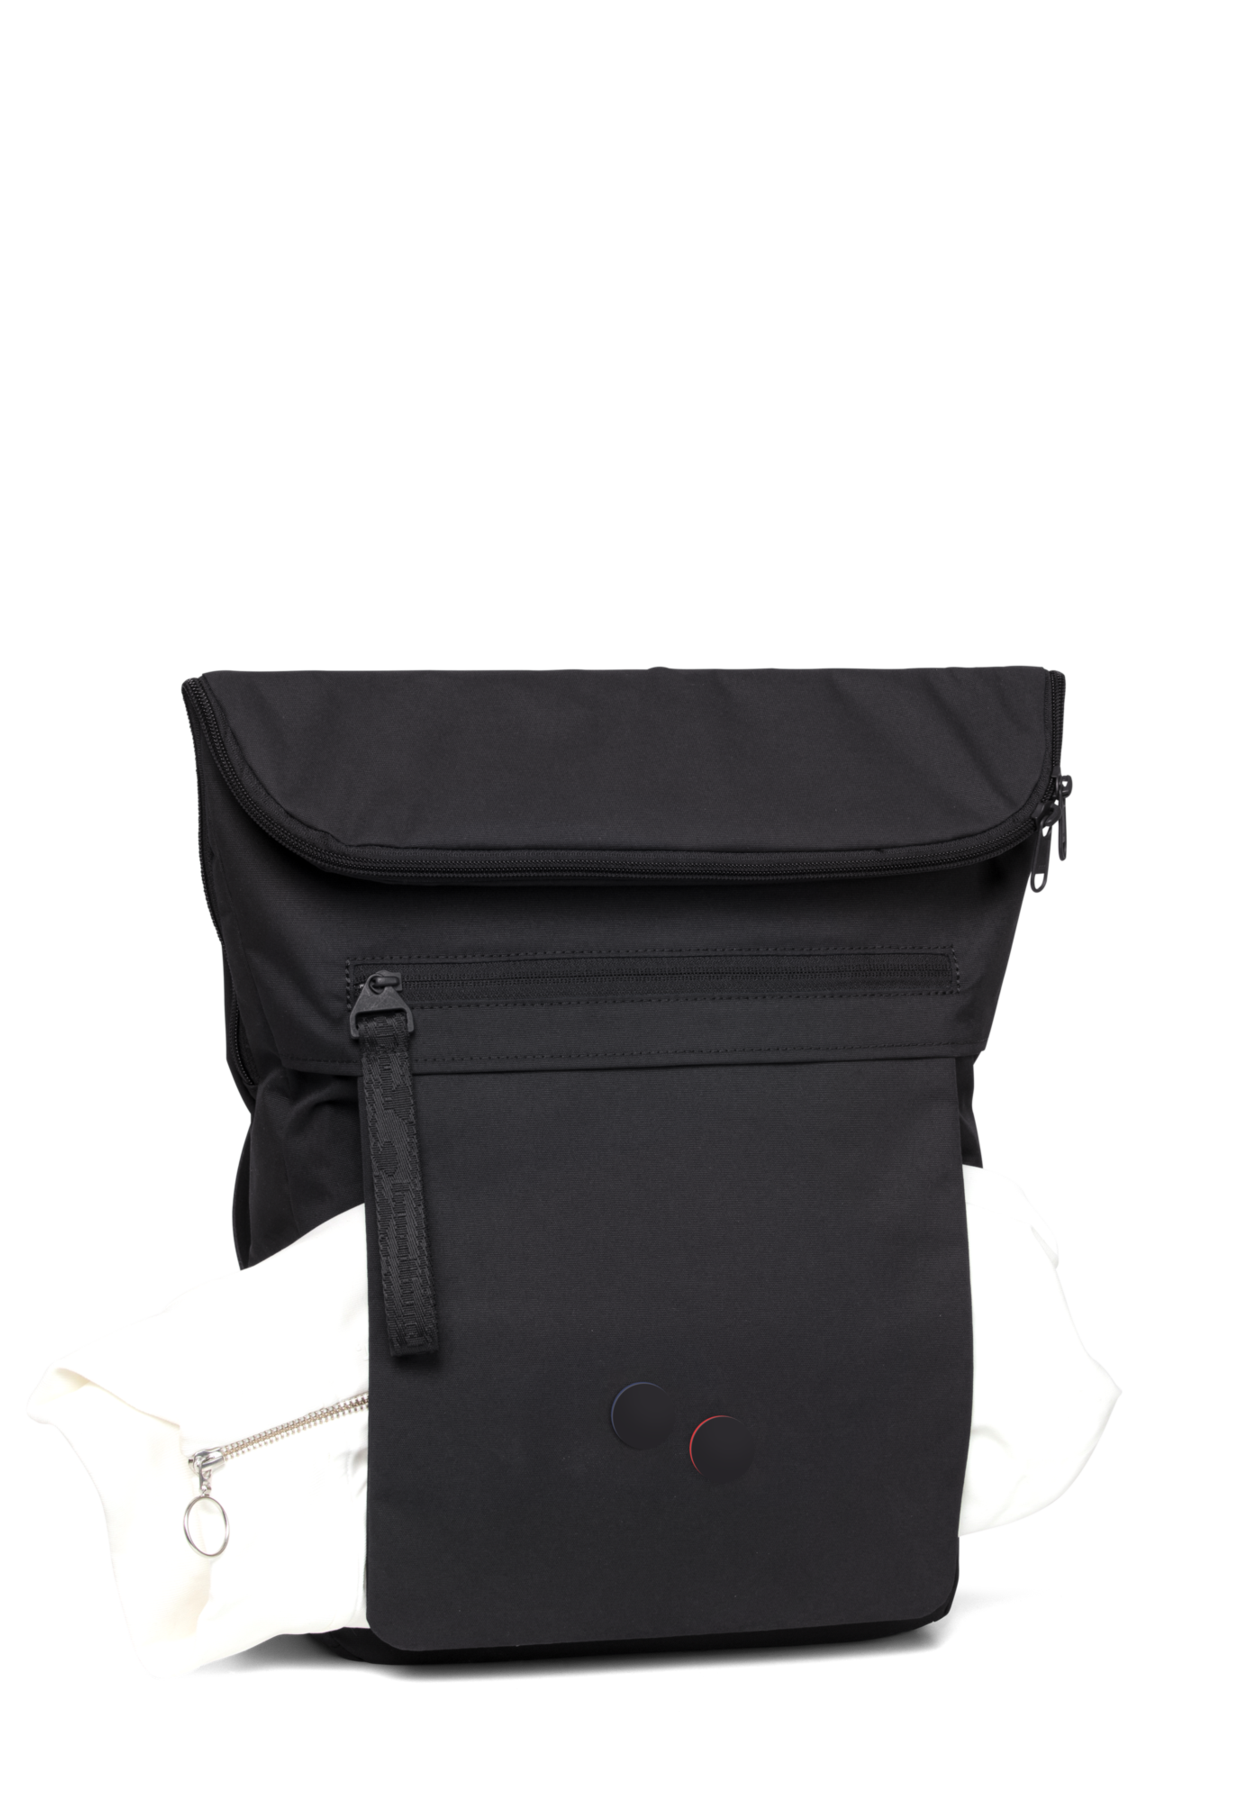 backpack klak rooted black